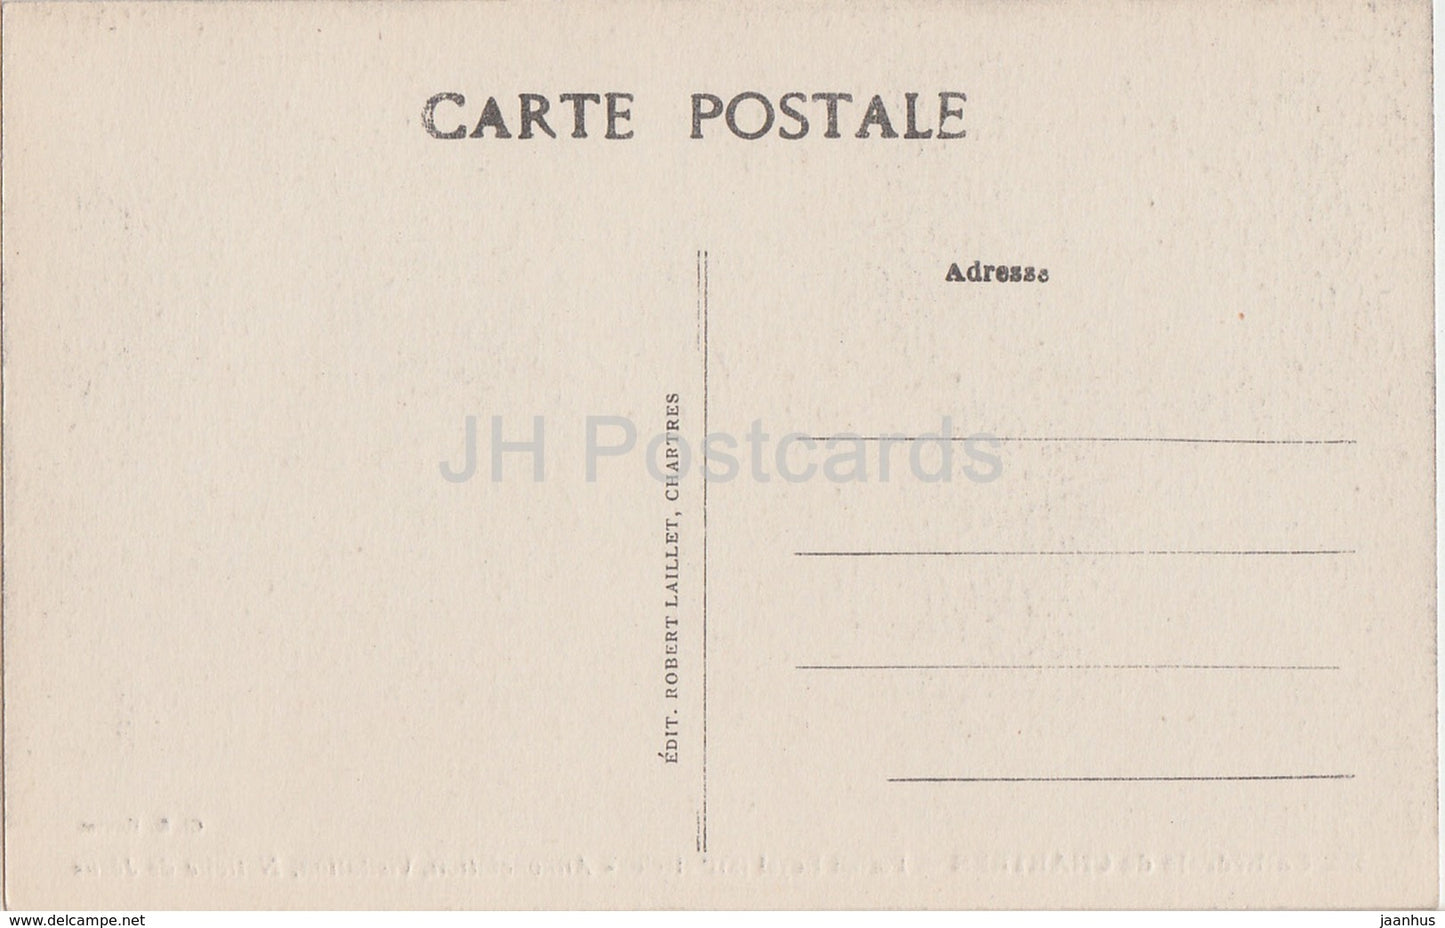 Kathedrale von Chartres - Portail Royal - Verkündigung - Heimsuchung - 155 - Kathedrale - alte Postkarte - Frankreich - unbenutzt